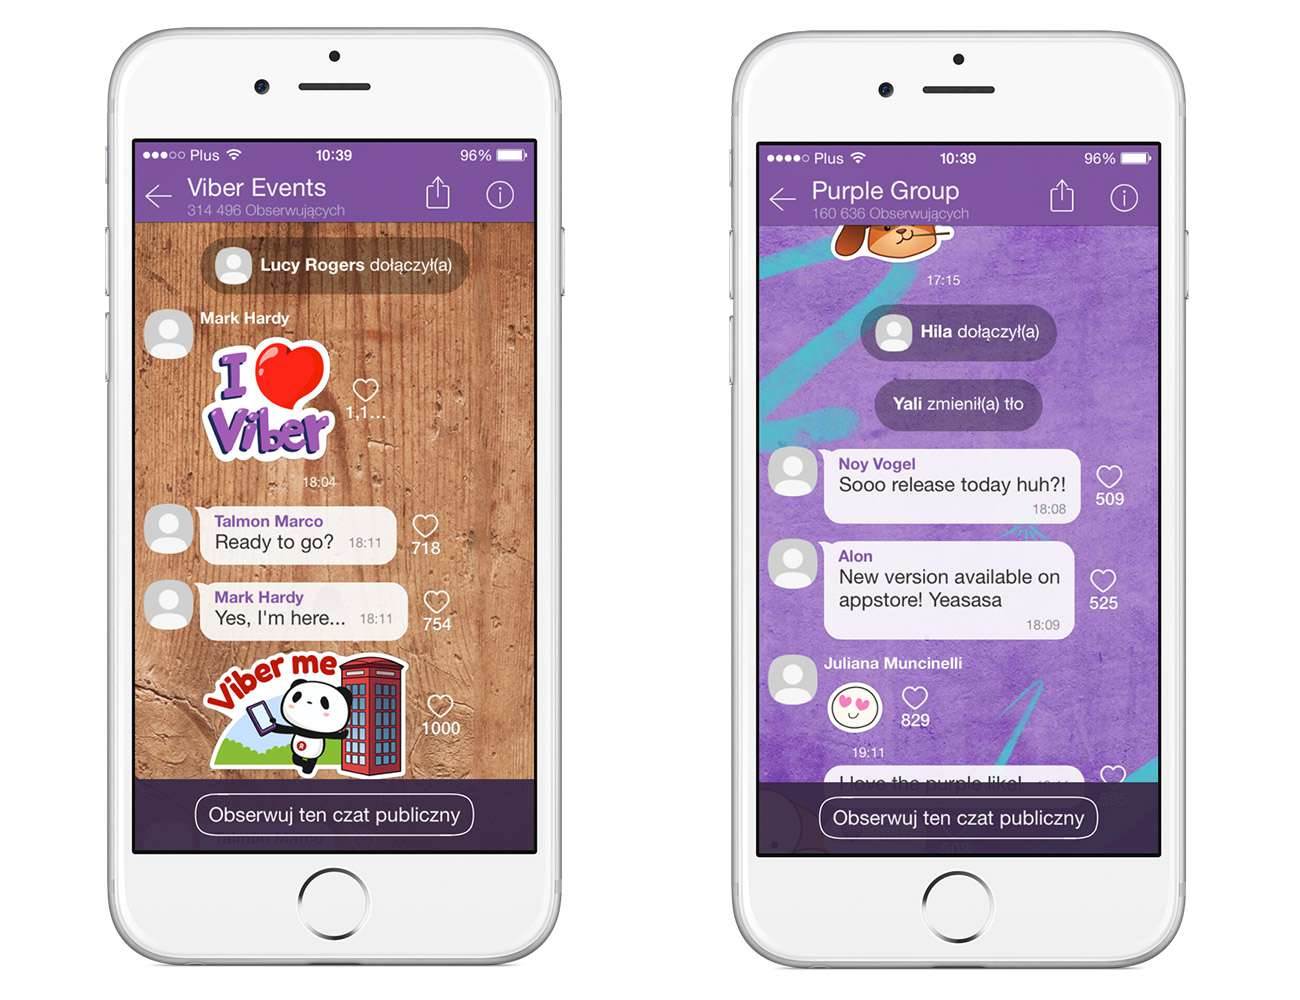 Apka Viber na iOS uaktualniona - co nowego? gry-i-aplikacje, aktualizacje Viber 5.2.1, Viber, Nowa wersja Viber, Mavericks, Mac, iOS 8.1, iOS, App Store, Android  Viber, to prosta aplikacja, która pozwala na wykonywanie połączeń audio oraz wideo całkowicie bezpłatnie. Dzwonić możemy do innych osób korzystających z Viber. Viber